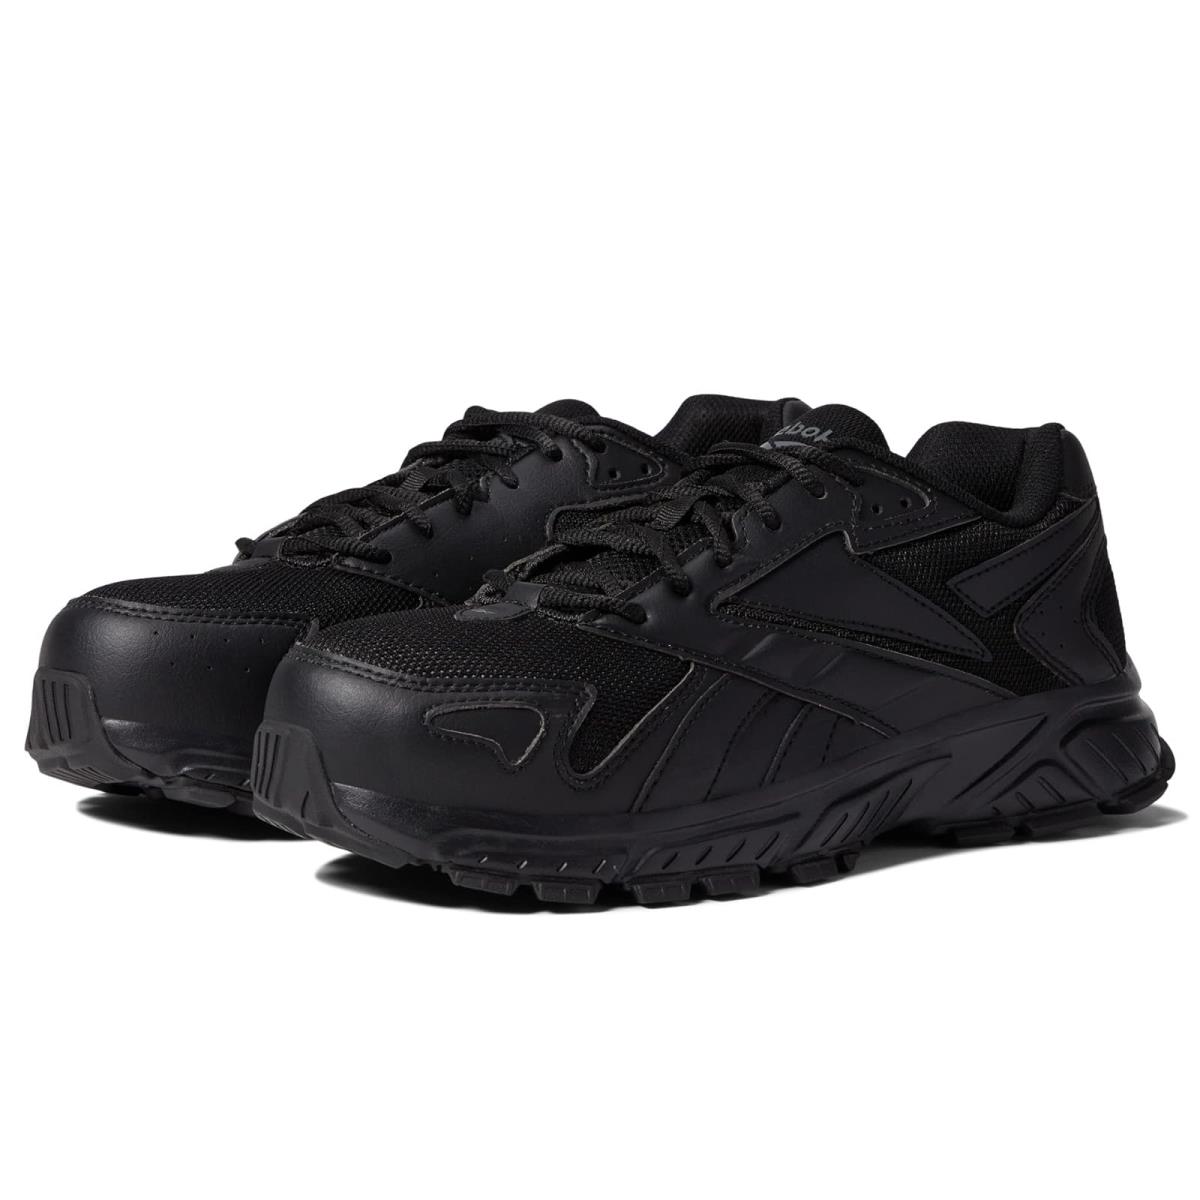 Man`s Sneakers Athletic Shoes Reebok Work Hyperium Work EH Comp Toe Black 1